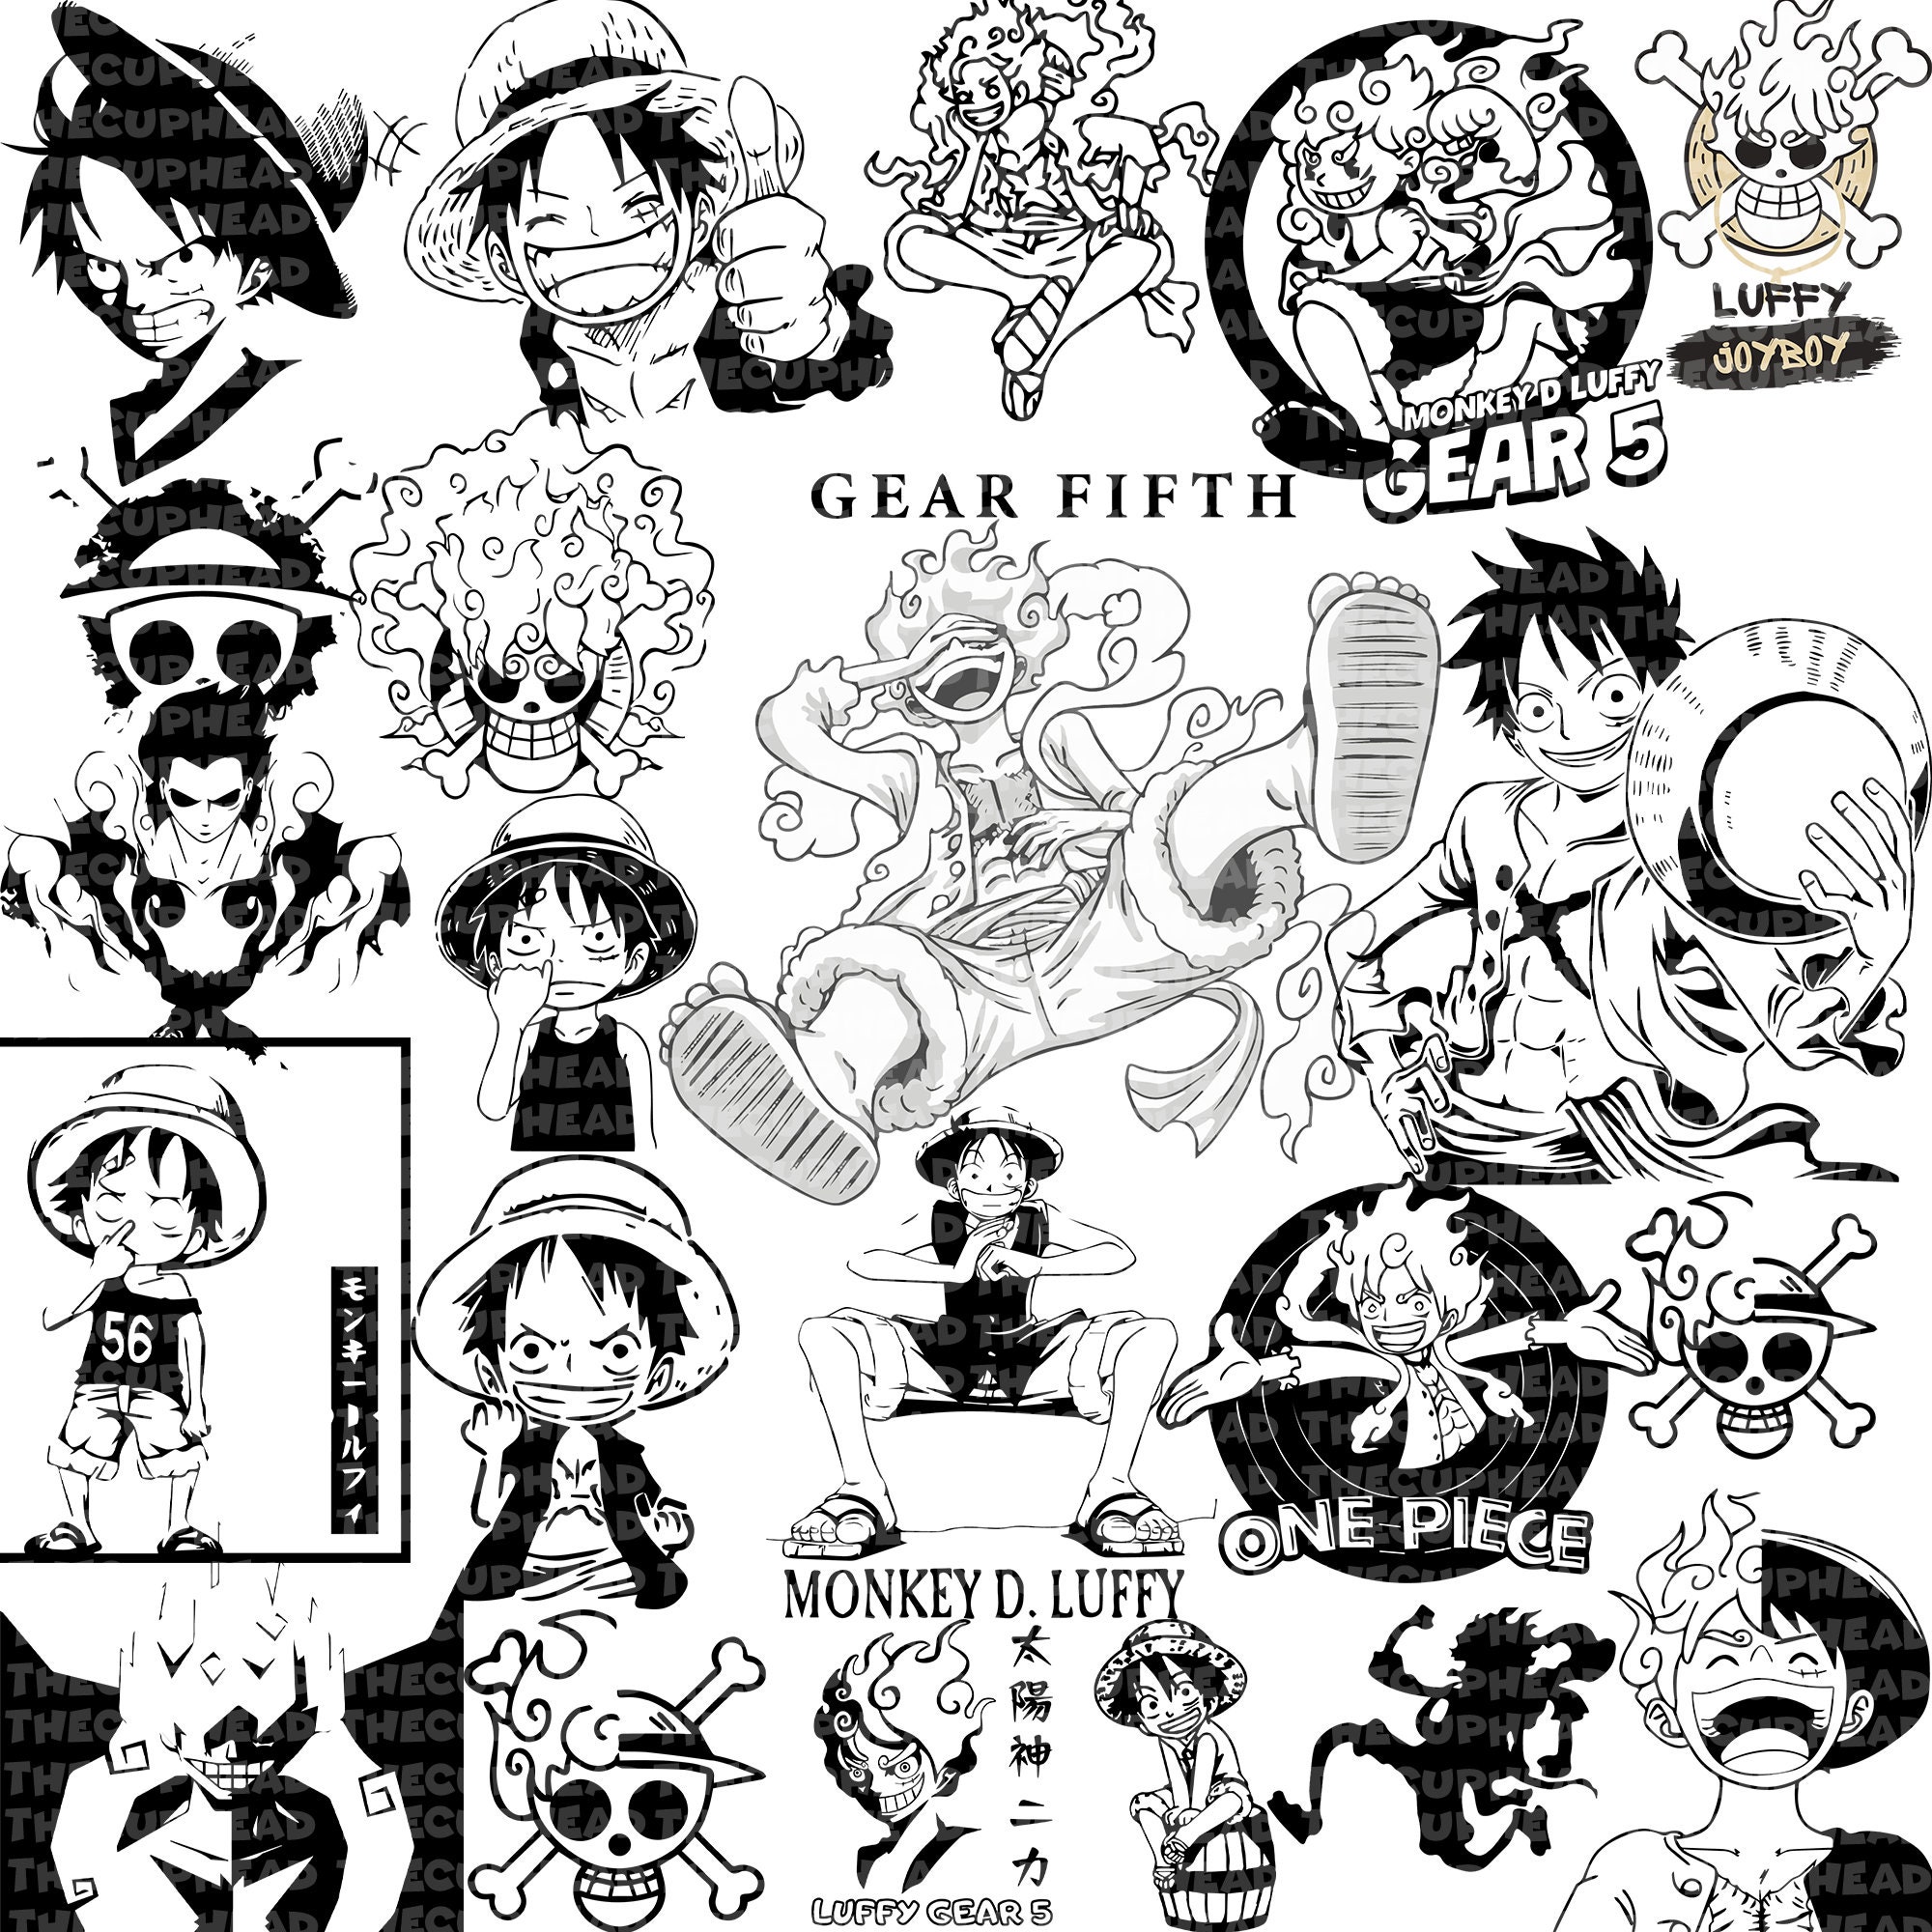 One Piece Merch - Monkey D. Luffy Wano Kuni MNK1108 - ®One Piece Merch